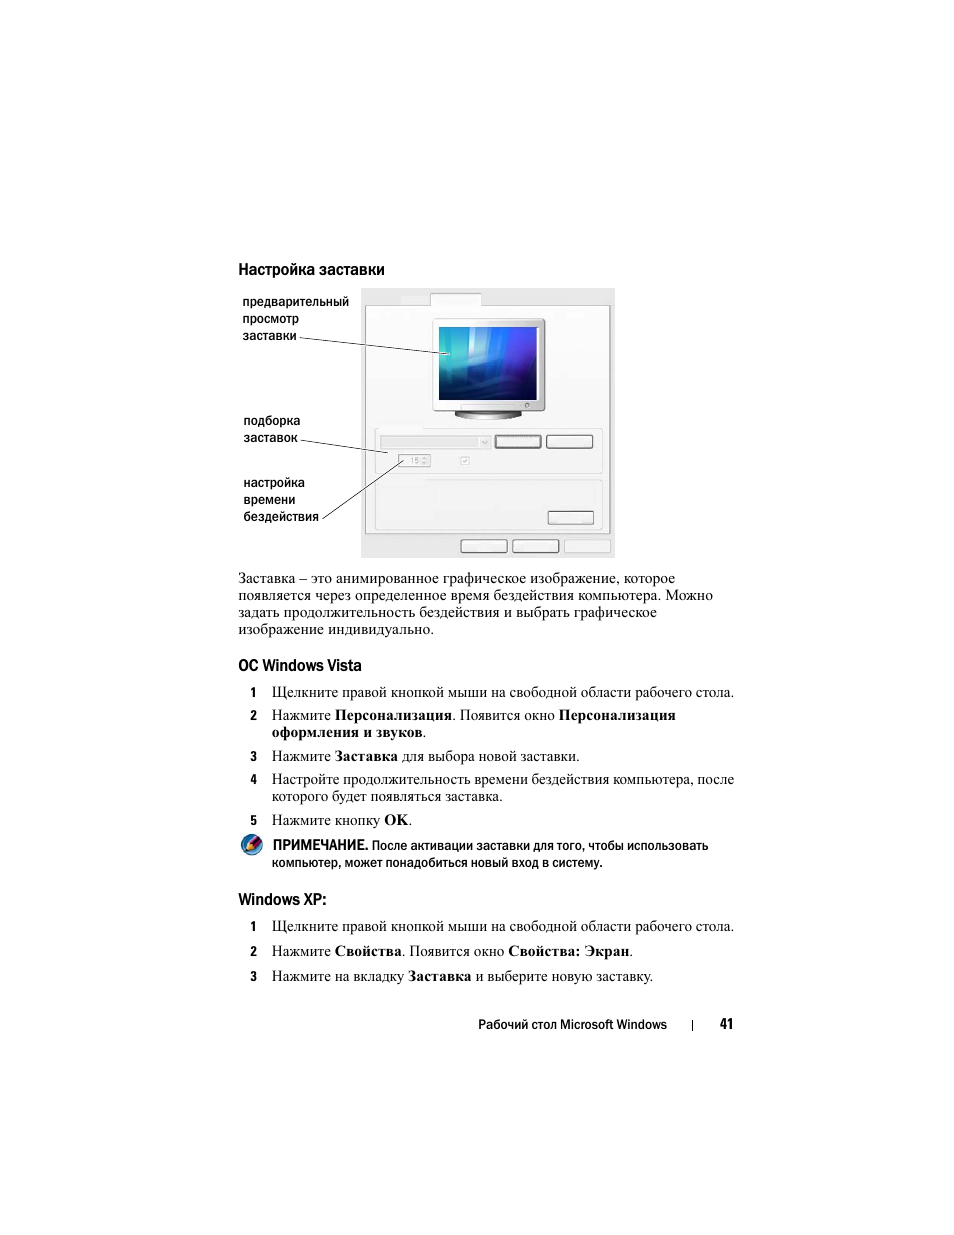 Настройка заставки, Ос windows vista, Windows xp | Инструкция по эксплуатации Dell Inspiron 560 | Страница 41 / 384